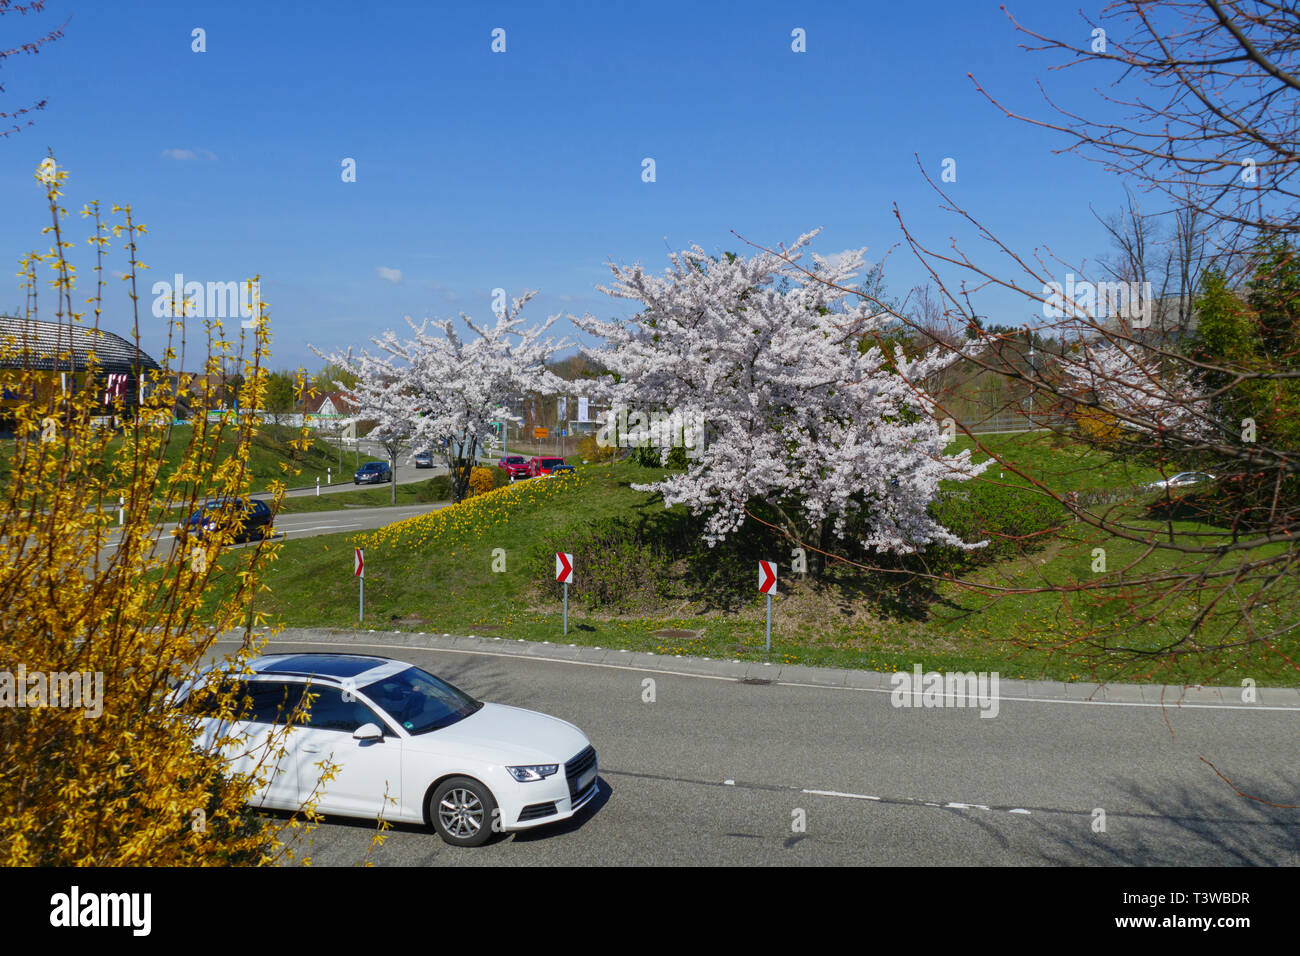 Kreisverkehr an der B500, Zubringer in Baden-Baden mit blühenden Bäumen Stock Photo